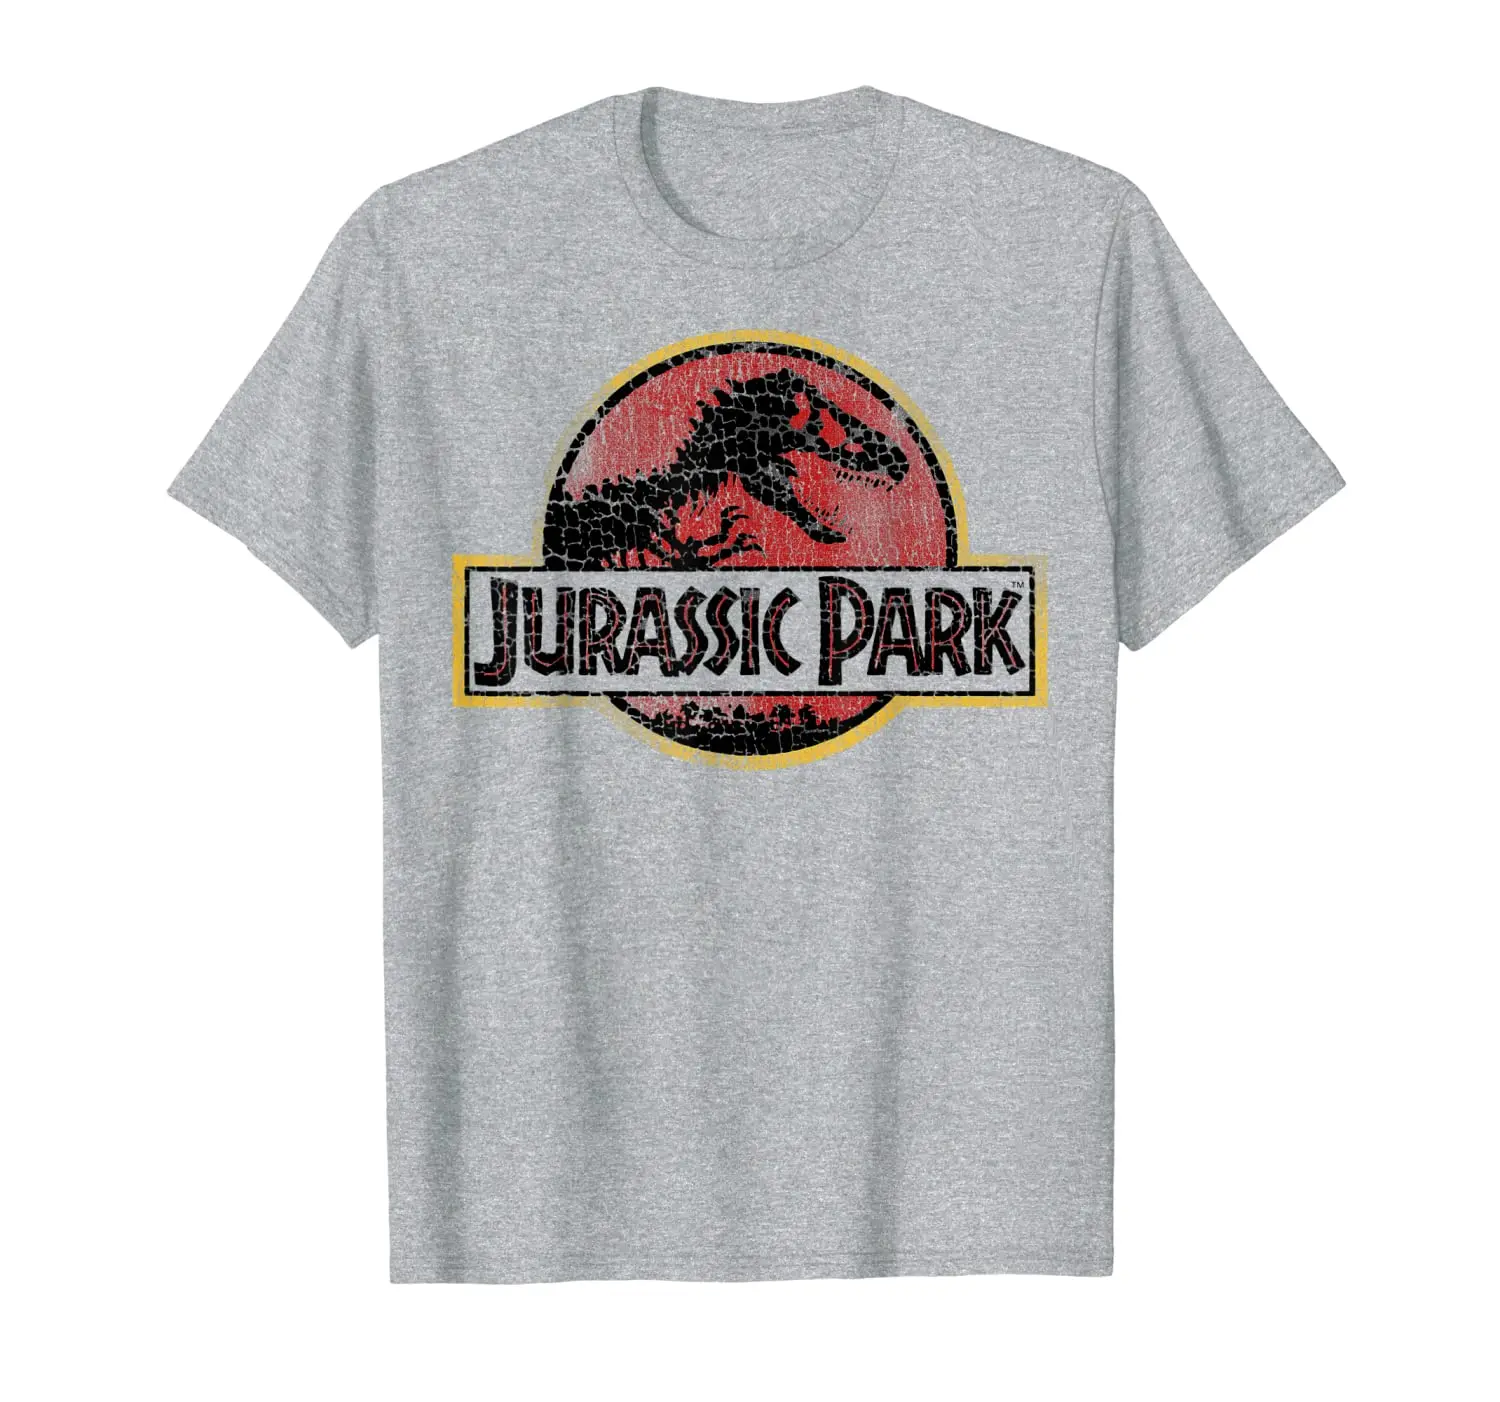 

Классическая винтажная футболка с графическим логотипом Парк Юрского периода